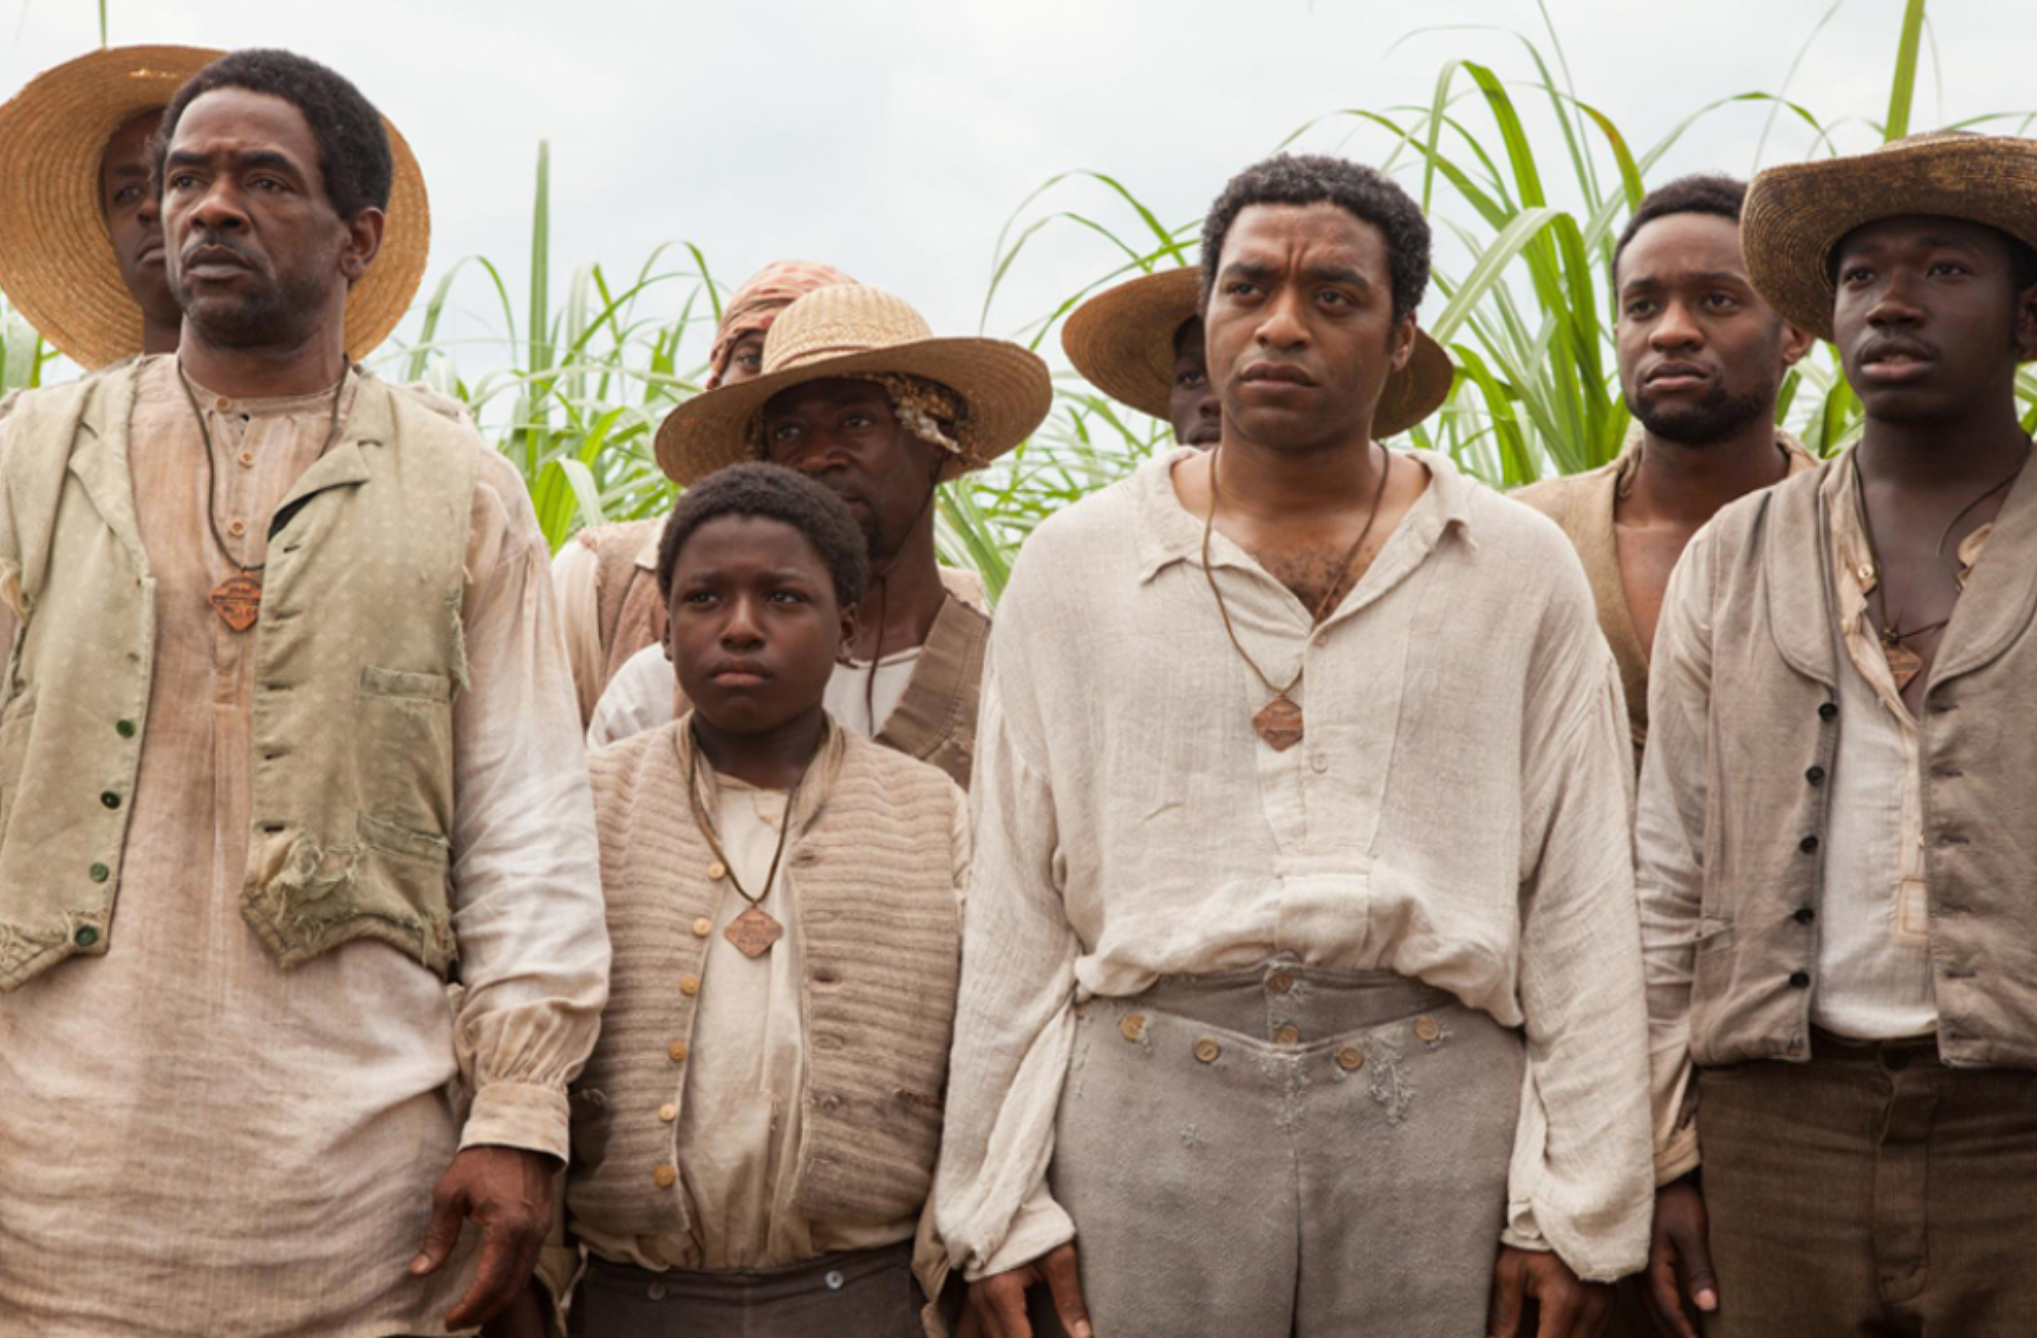 Σόλομον Νόρθαπ: Η συγκλονιστική ιστορία πίσω από την ταινία 12 Χρόνια Σκλάβος